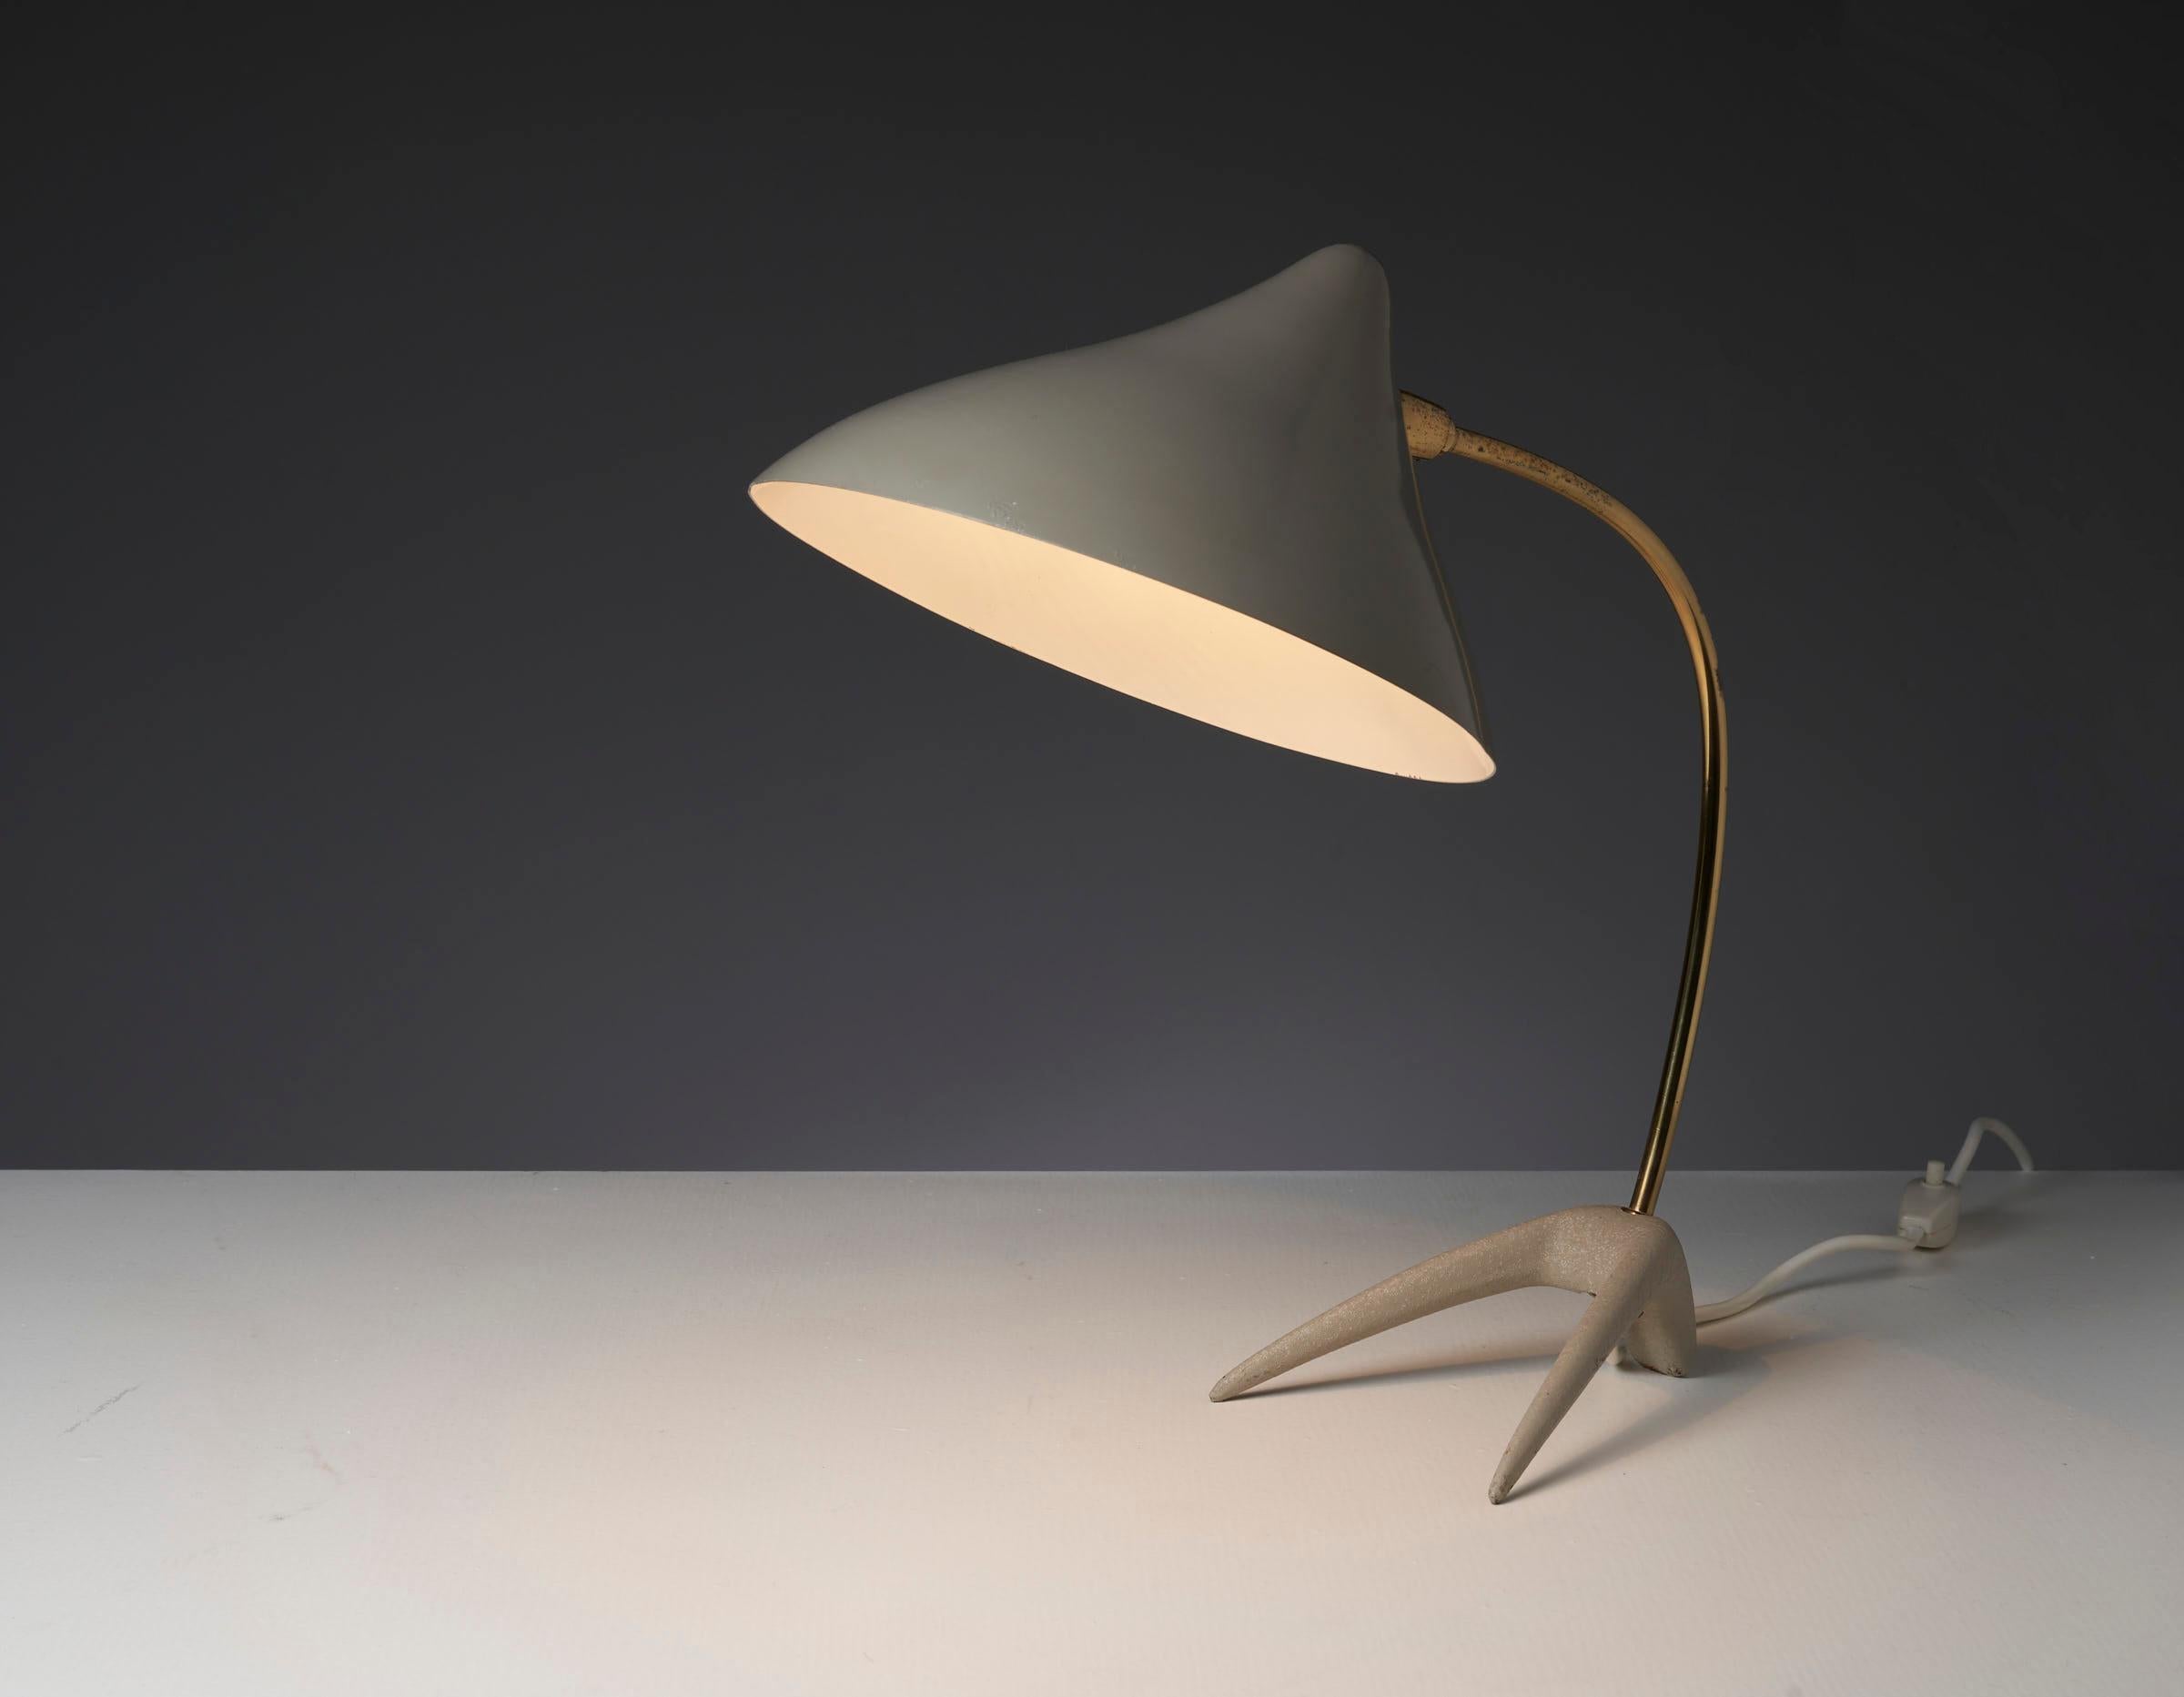 Lampe de bureau 'Crowfoot', conçue par Karl-Heinz Kinsky pour Cosack dans les années 1950. Cette lampe de table est facilement reconnaissable à sa base tripode particulière, qui ressemble à une patte de corbeau. Il est fabriqué en fonte et présente